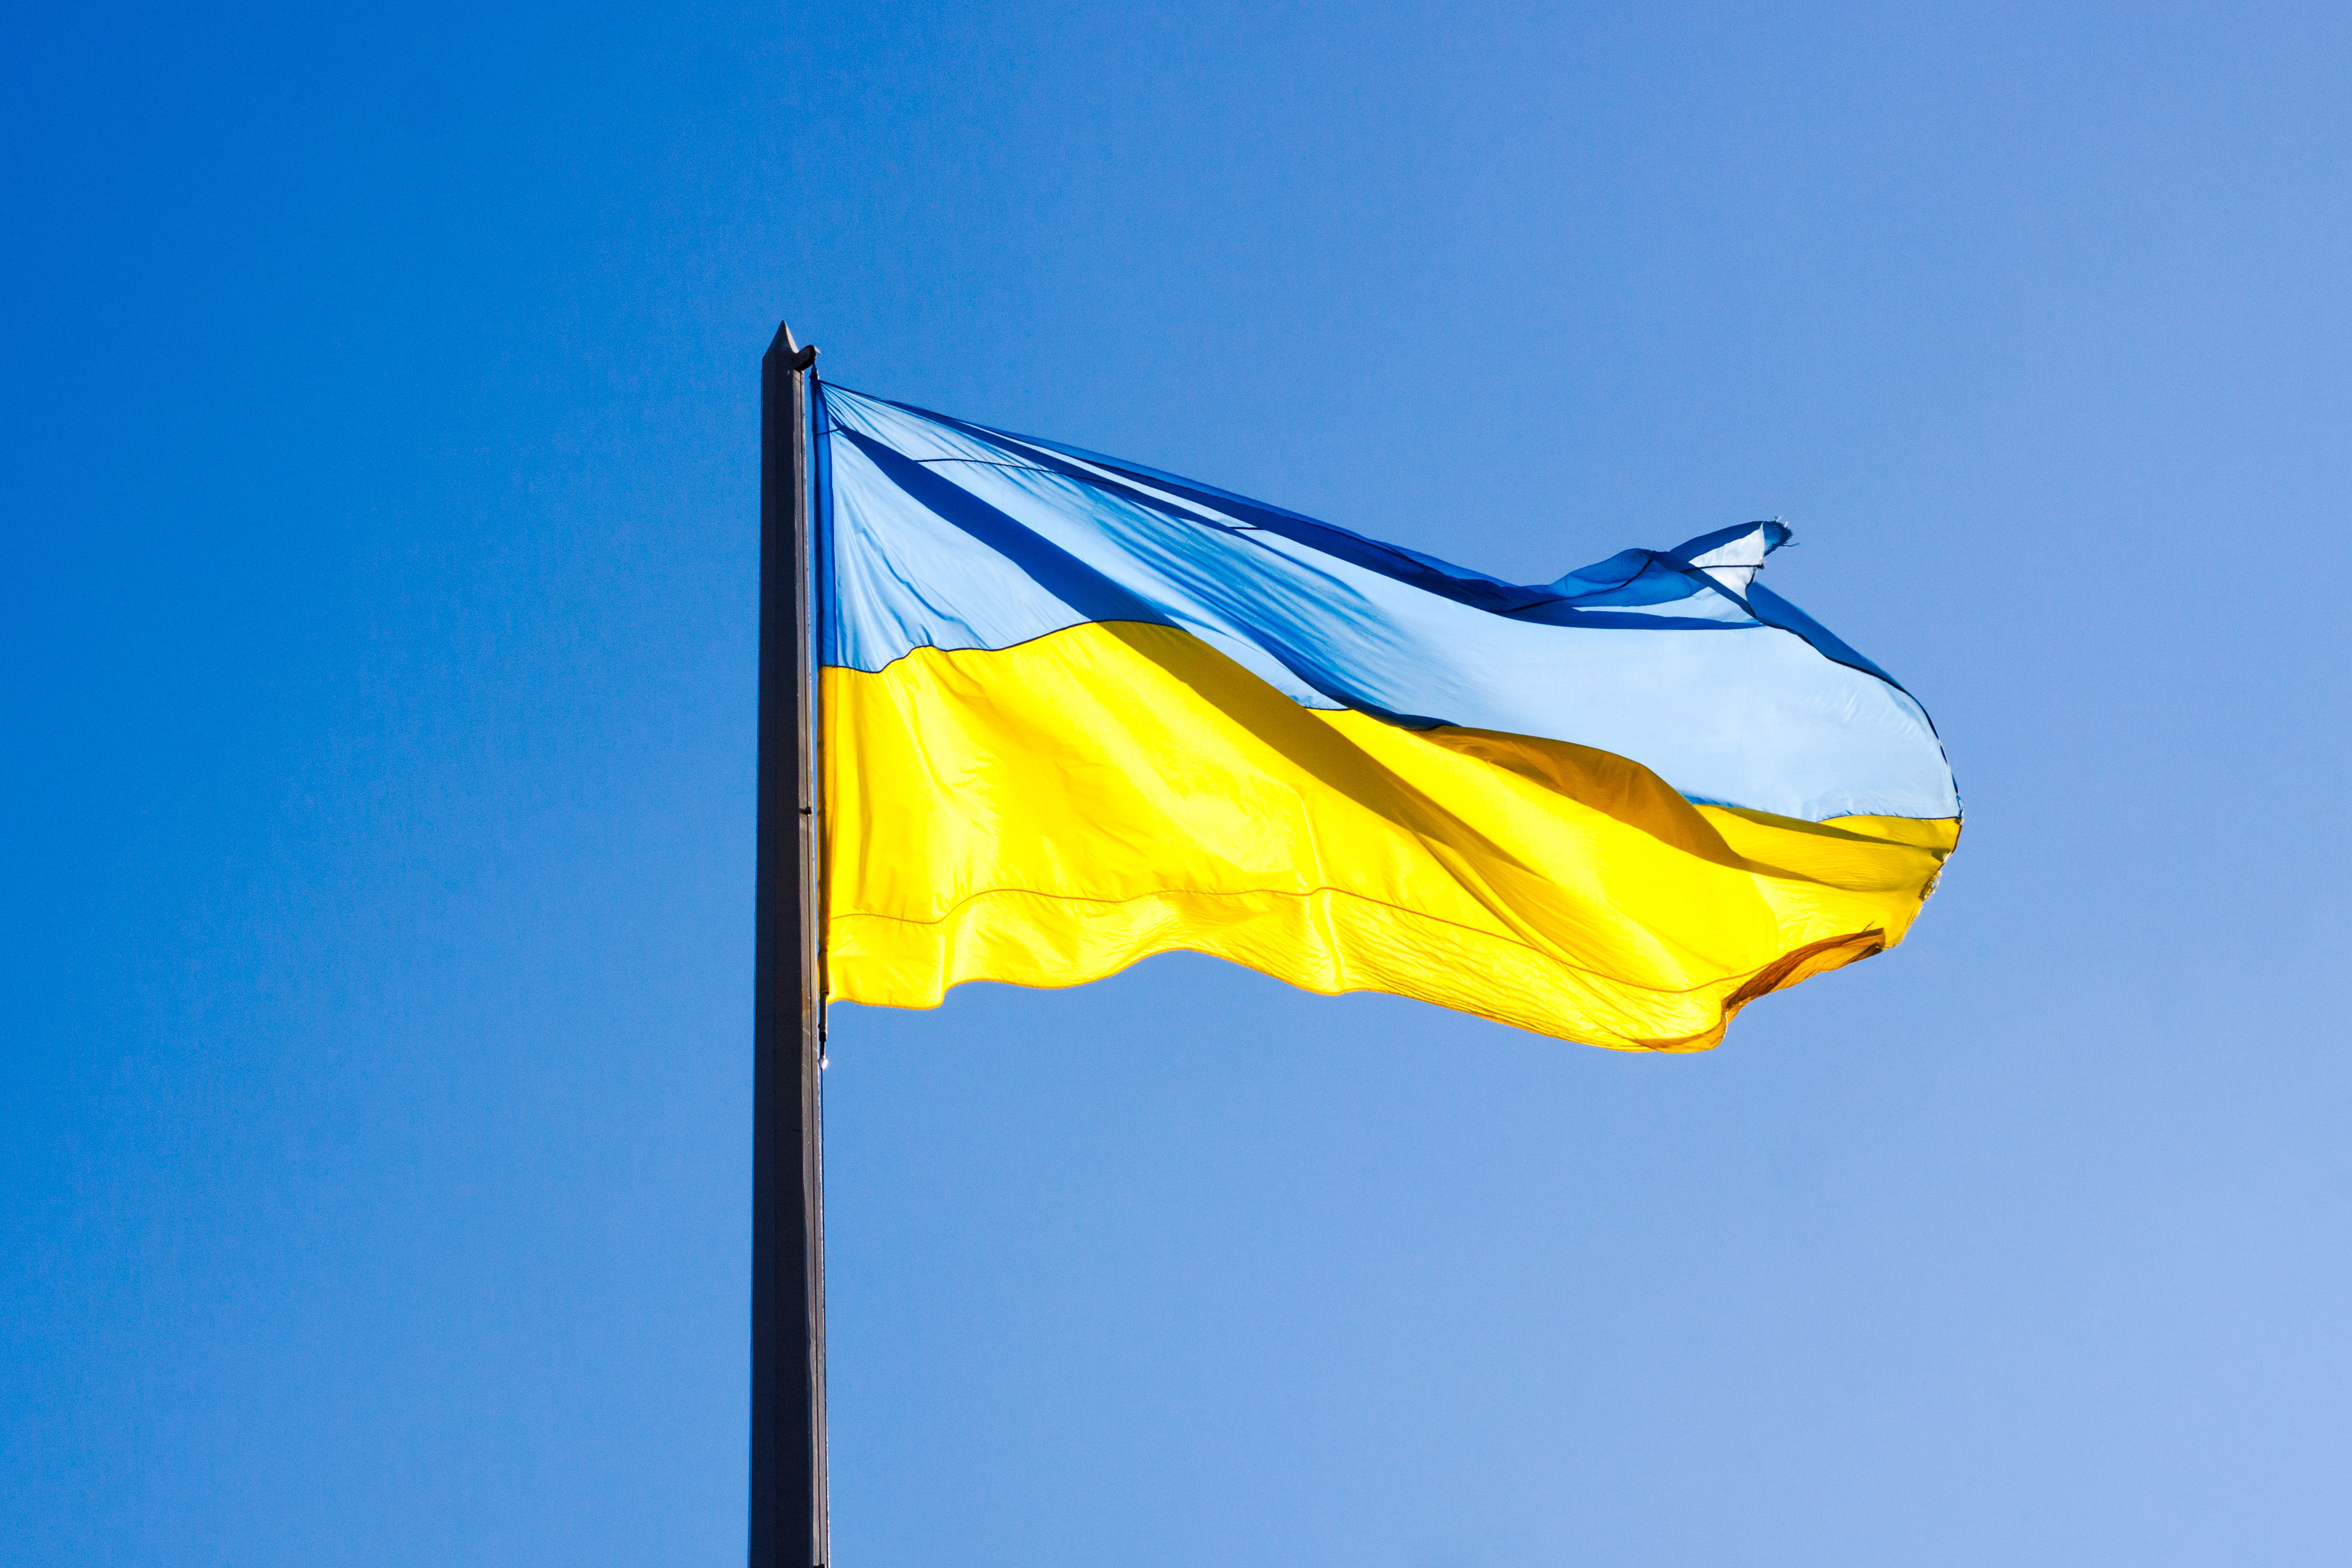 The Ukrainian flag against a blue sky